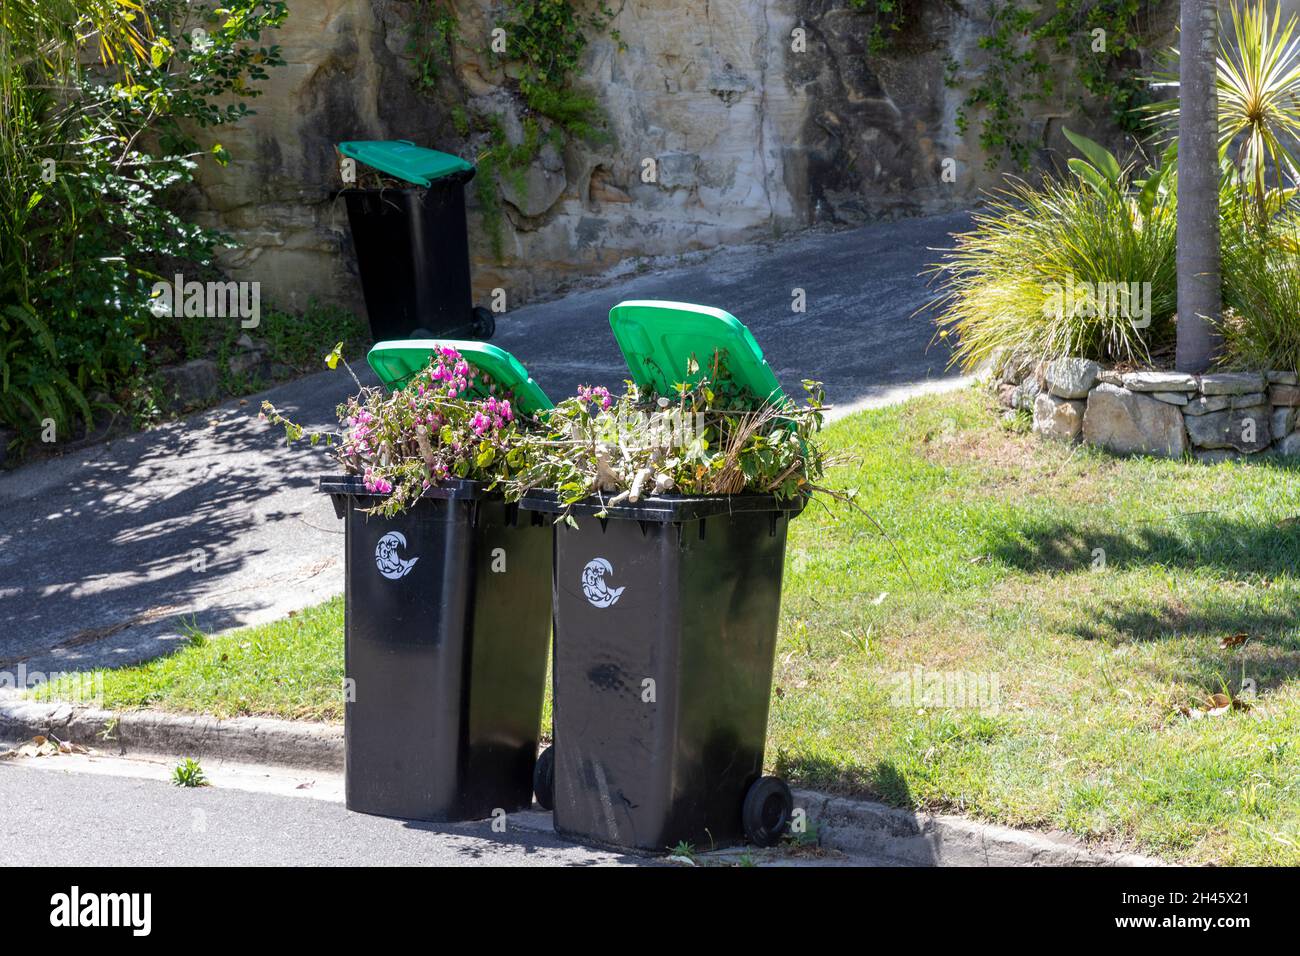 Par de contenedores de residuos de jardines verdes destinados a la recogida y reciclaje del consejo,Sydney,Australia Foto de stock